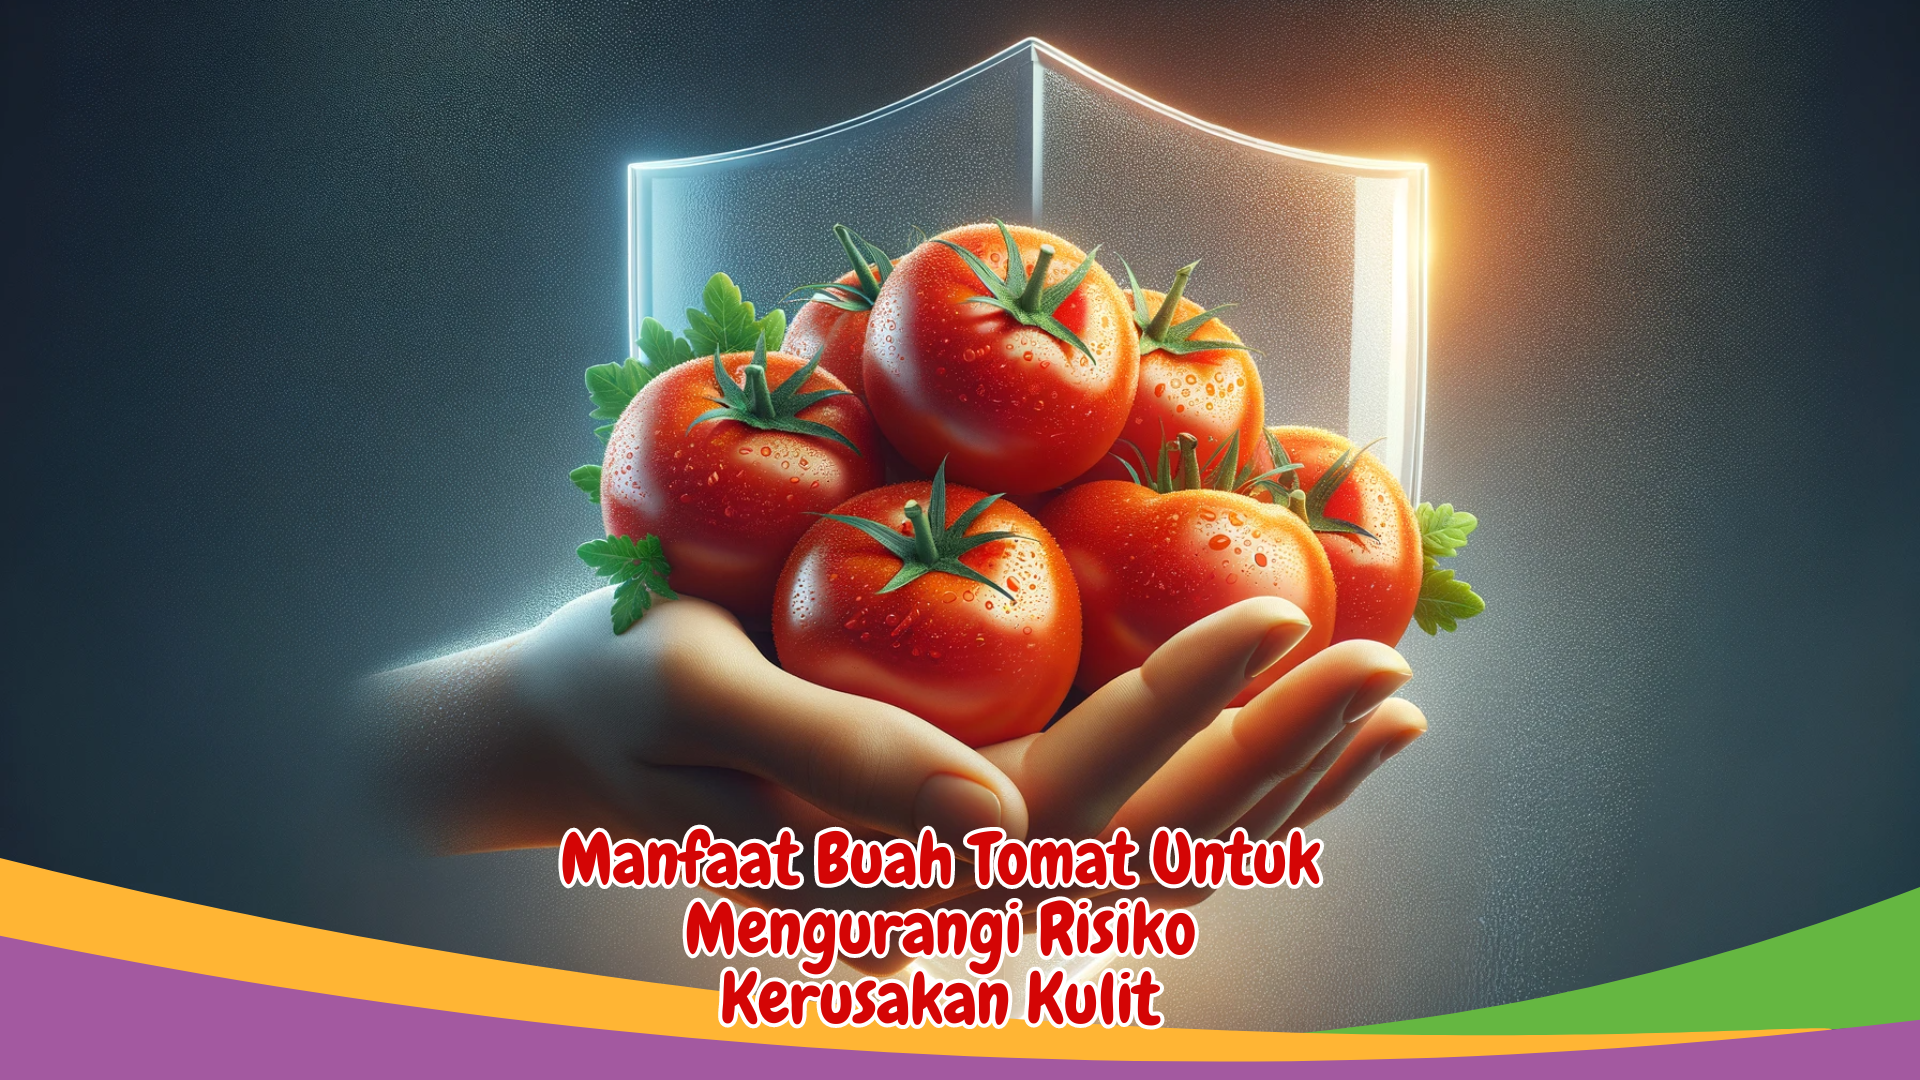 Manfaat Buah Tomat Untuk Mengurangi Risiko Kerusakan Kulit